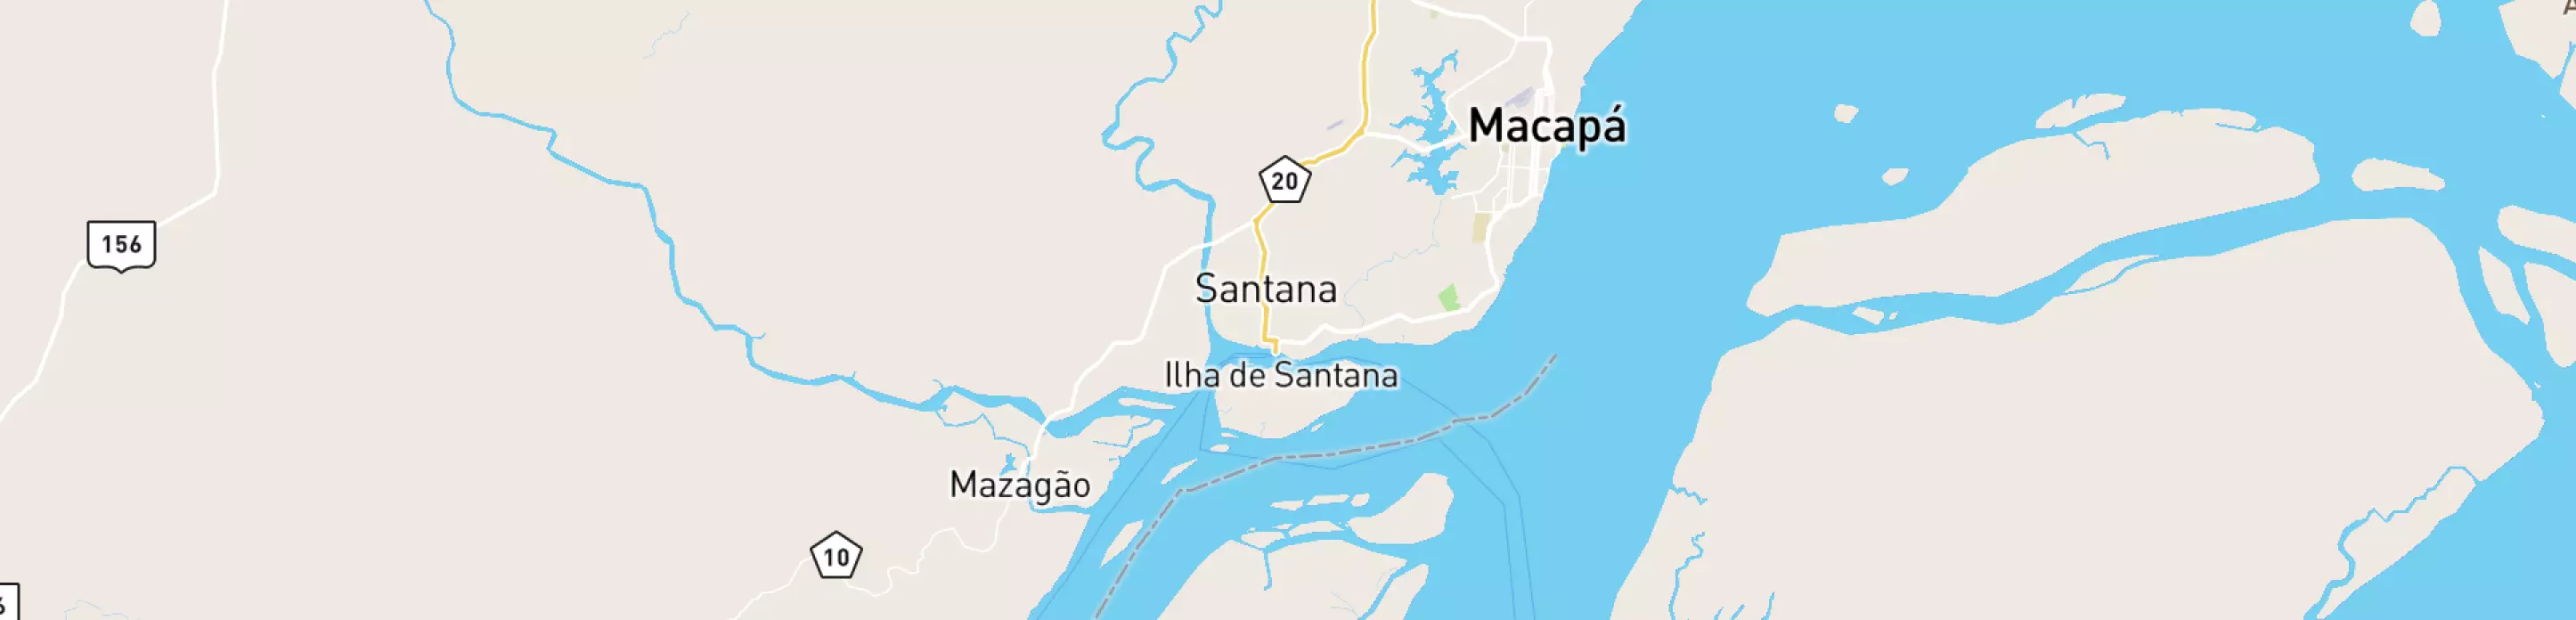 Mapa mostrando localização do terminal logístico de Macapá, da Petrobras.